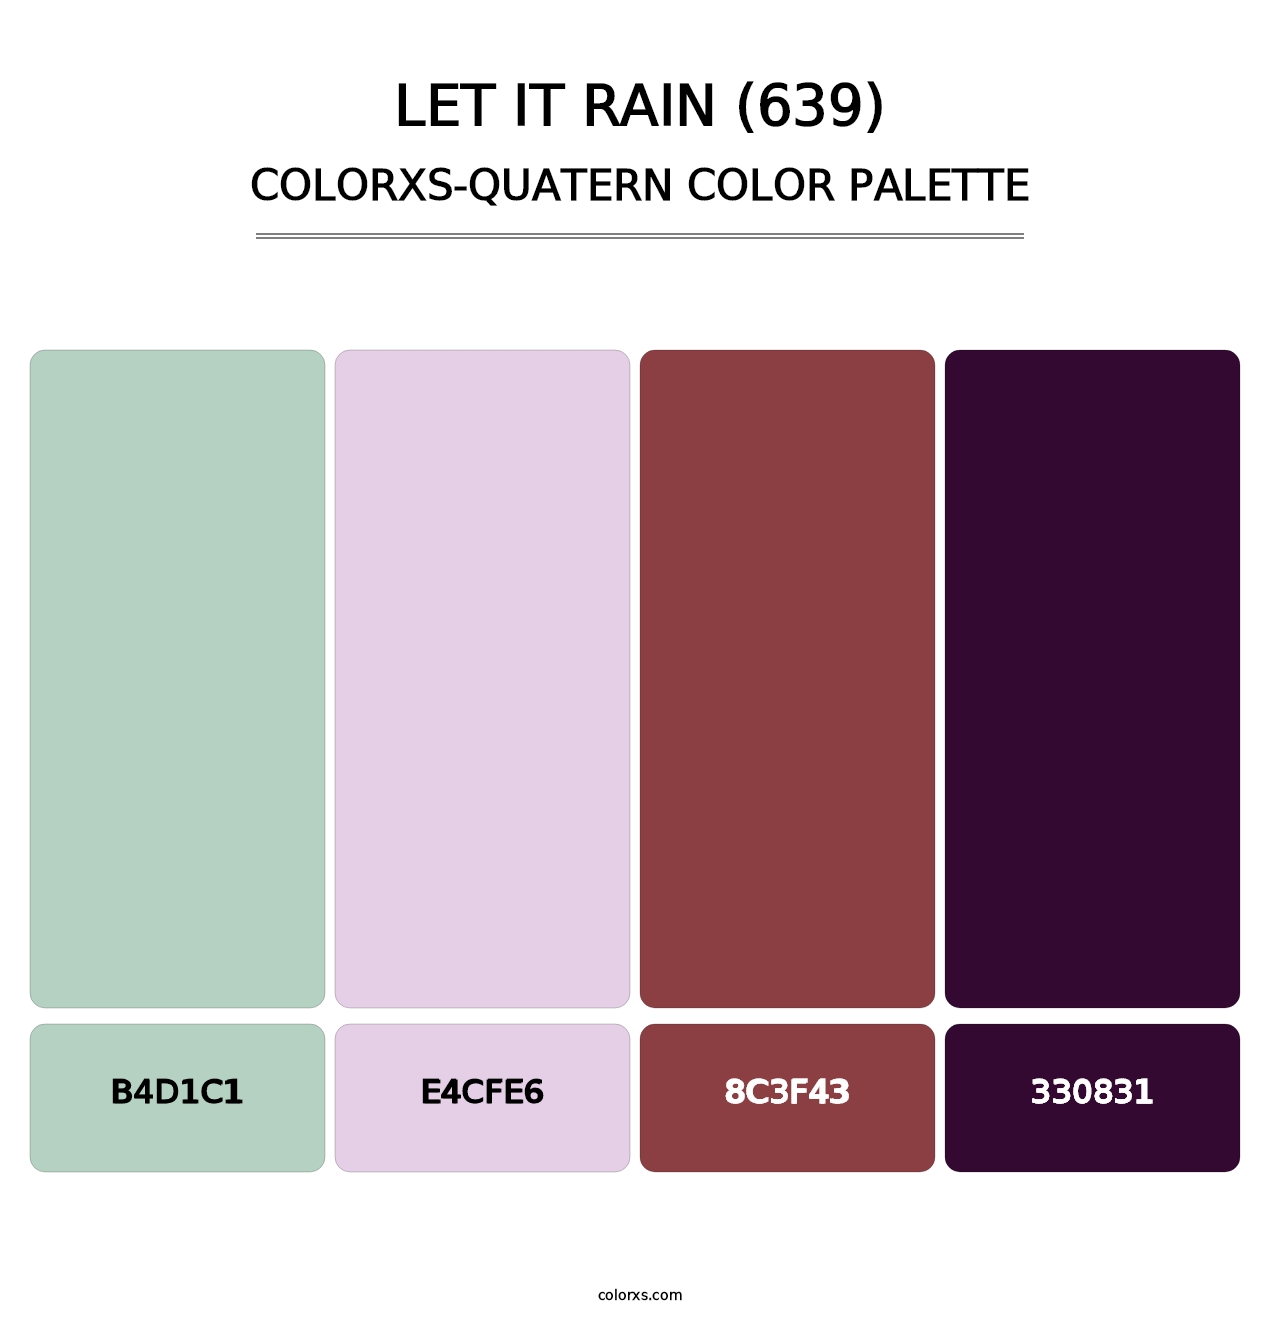 Let It Rain (639) - Colorxs Quatern Palette